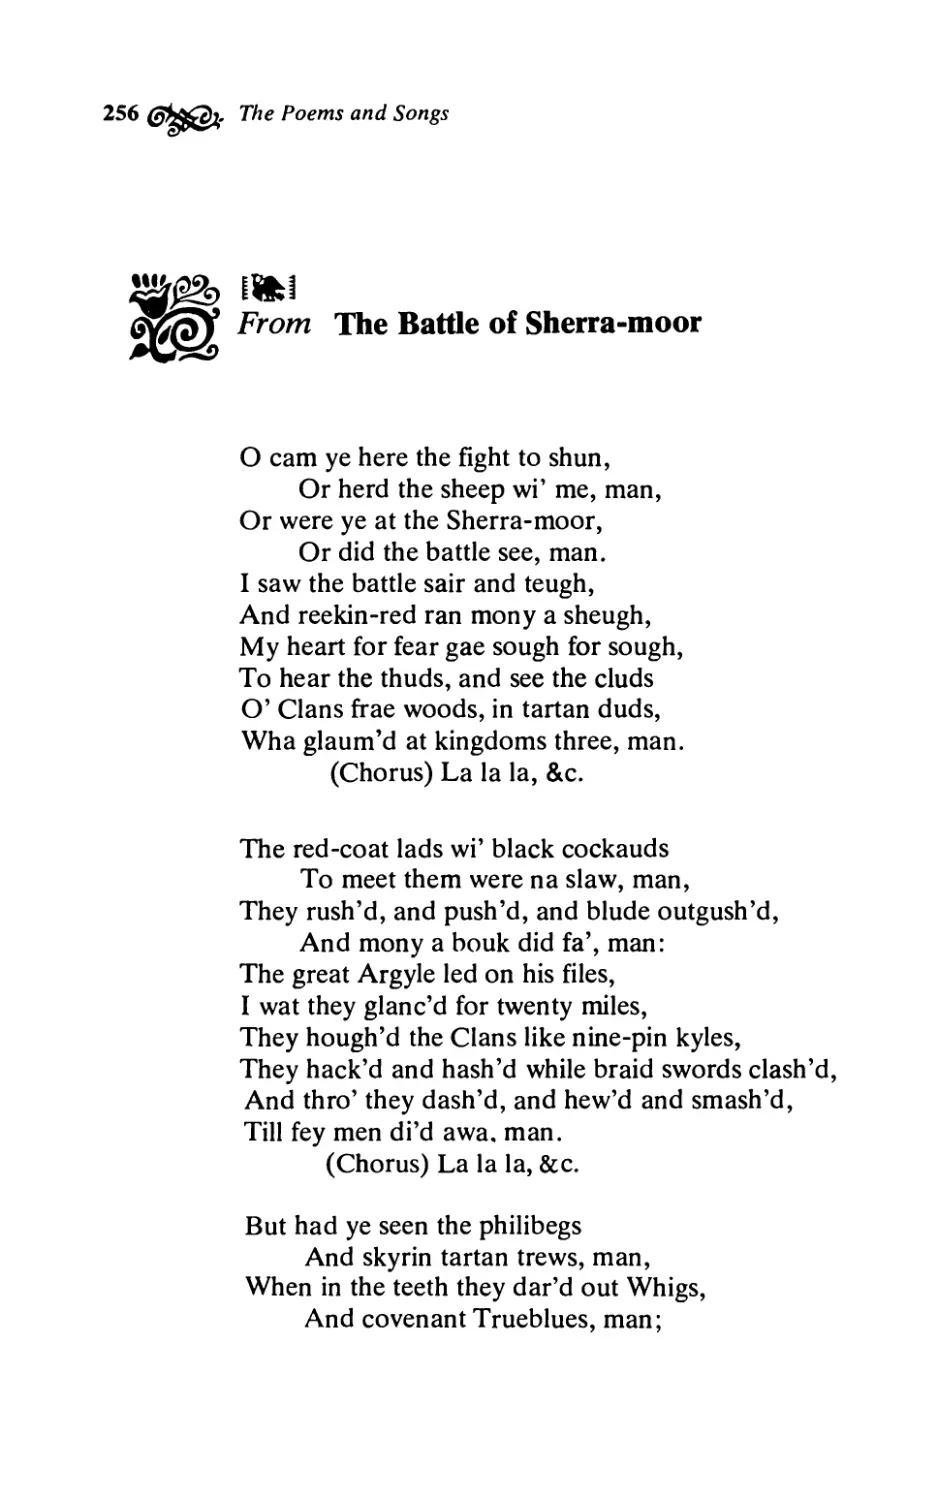 From The Battle of Sherra-moor